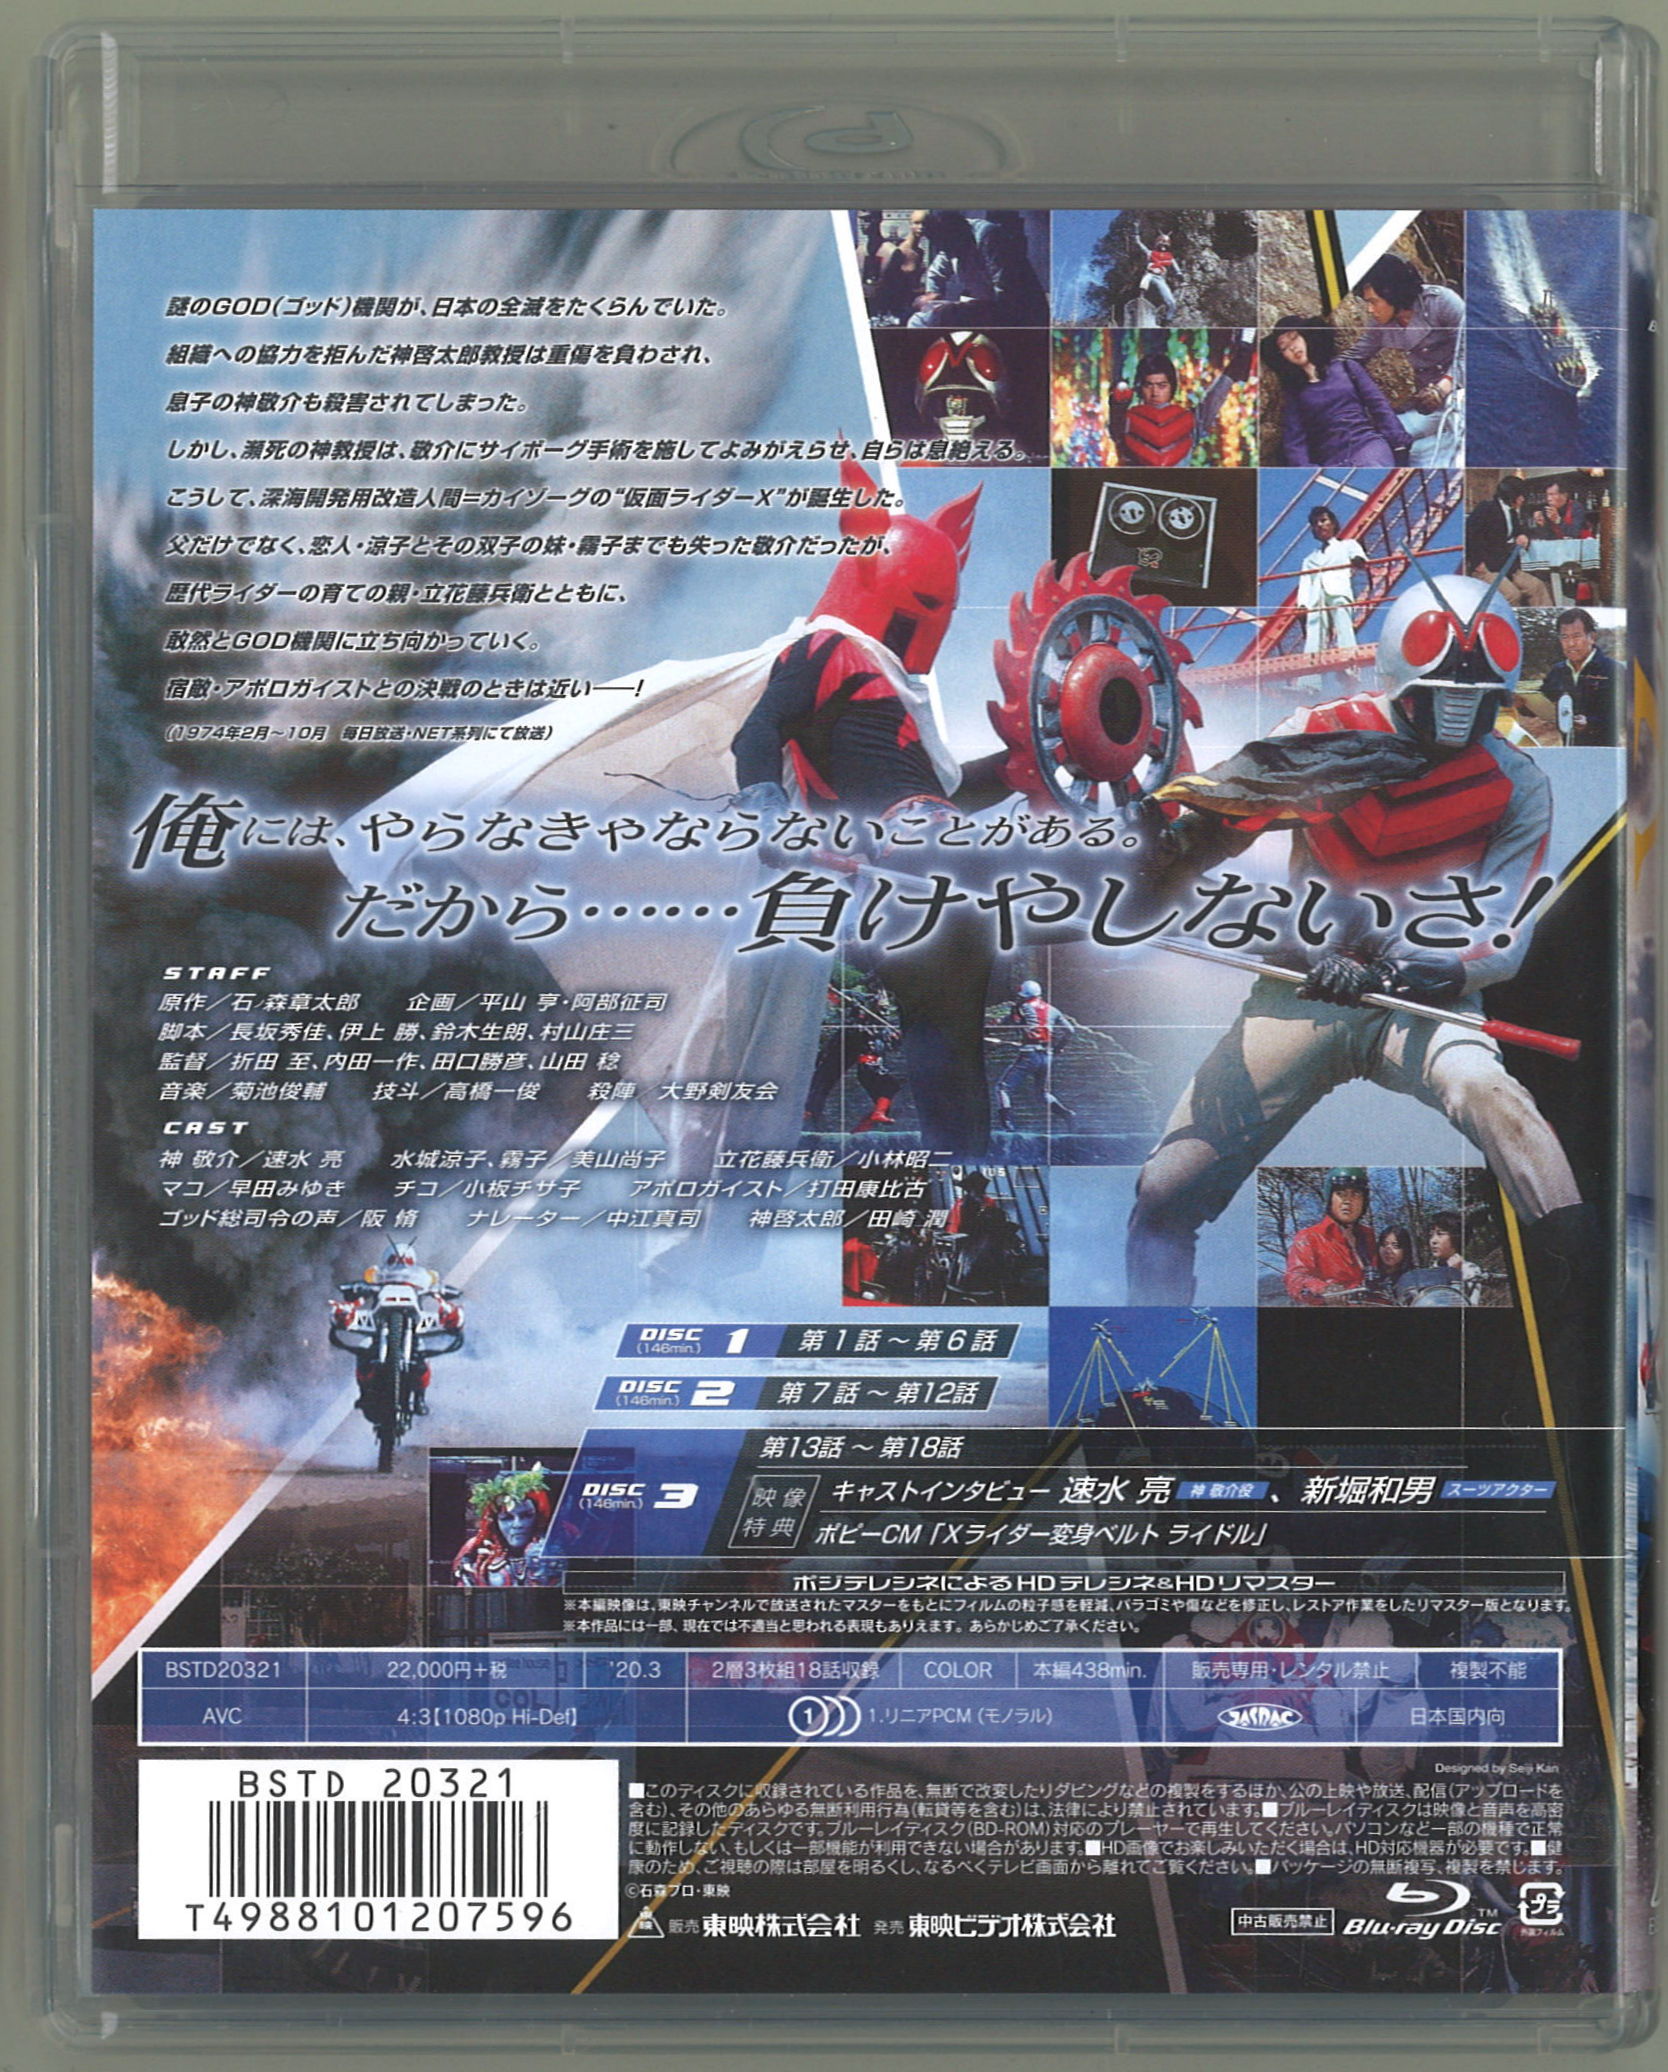 仮面ライダーX Blu-ray BOX 全2巻 セット 初回収納BOX付き - 通販 ...